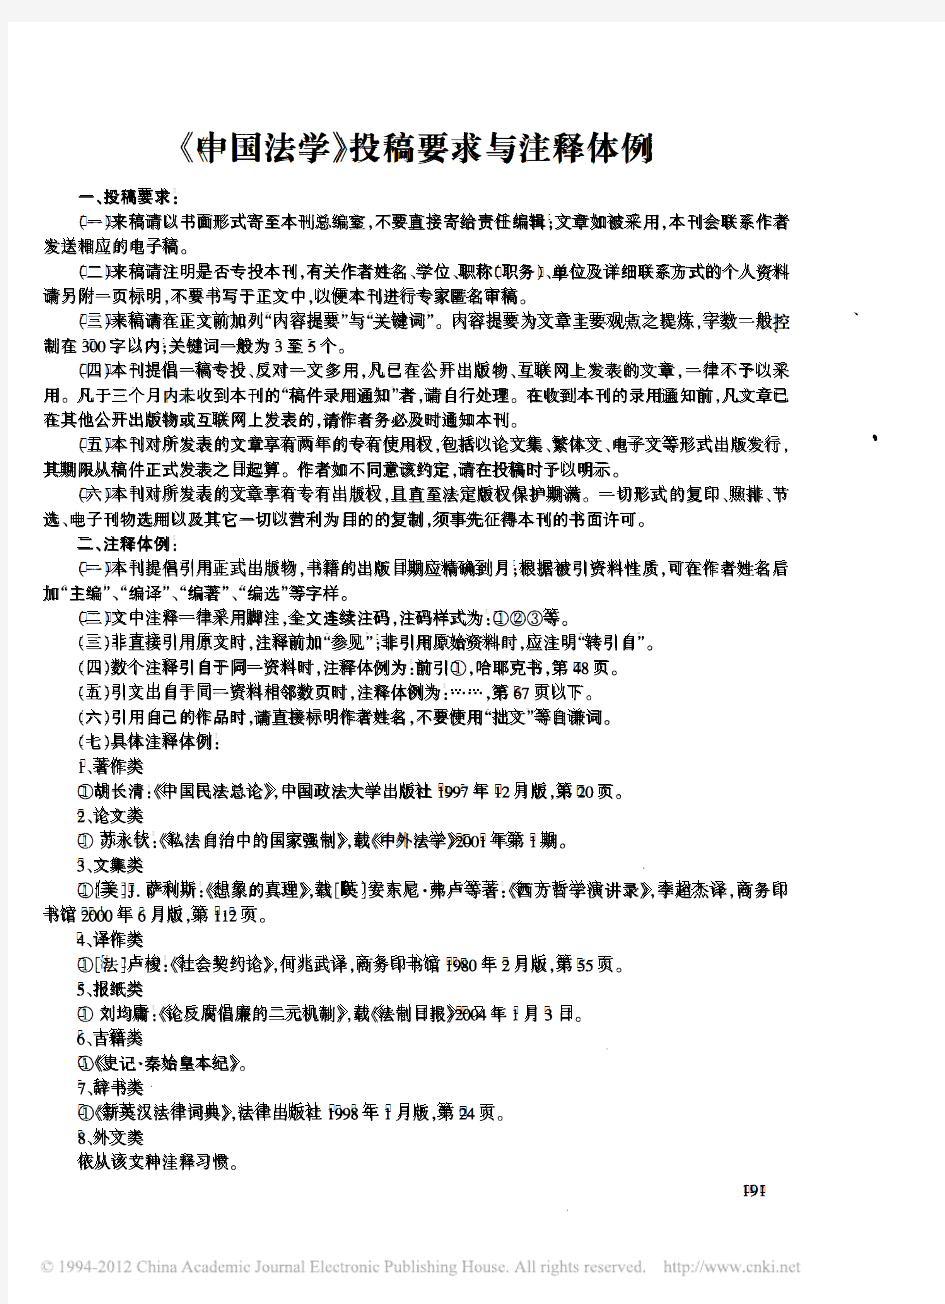 《中国法学》投稿要求与注释体例